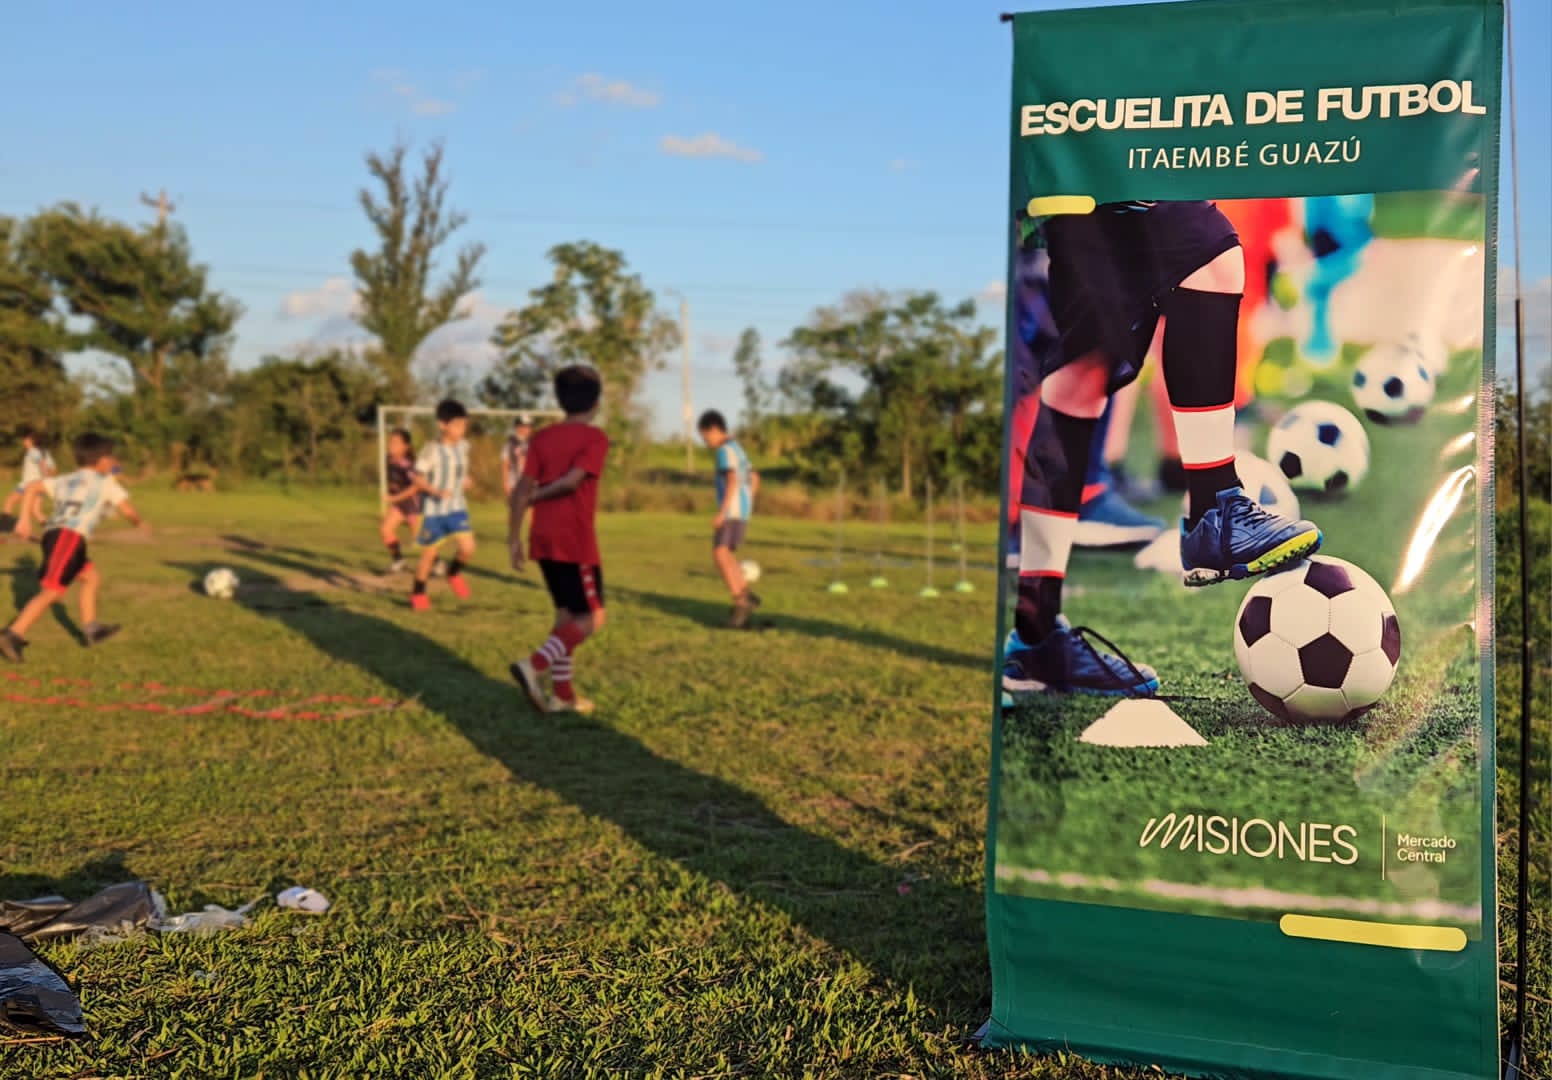 Comunidad de Itaembé Guazú destaca la puesta en funcionamiento de la Escuelita de Fútbol del Mercado Central imagen-60